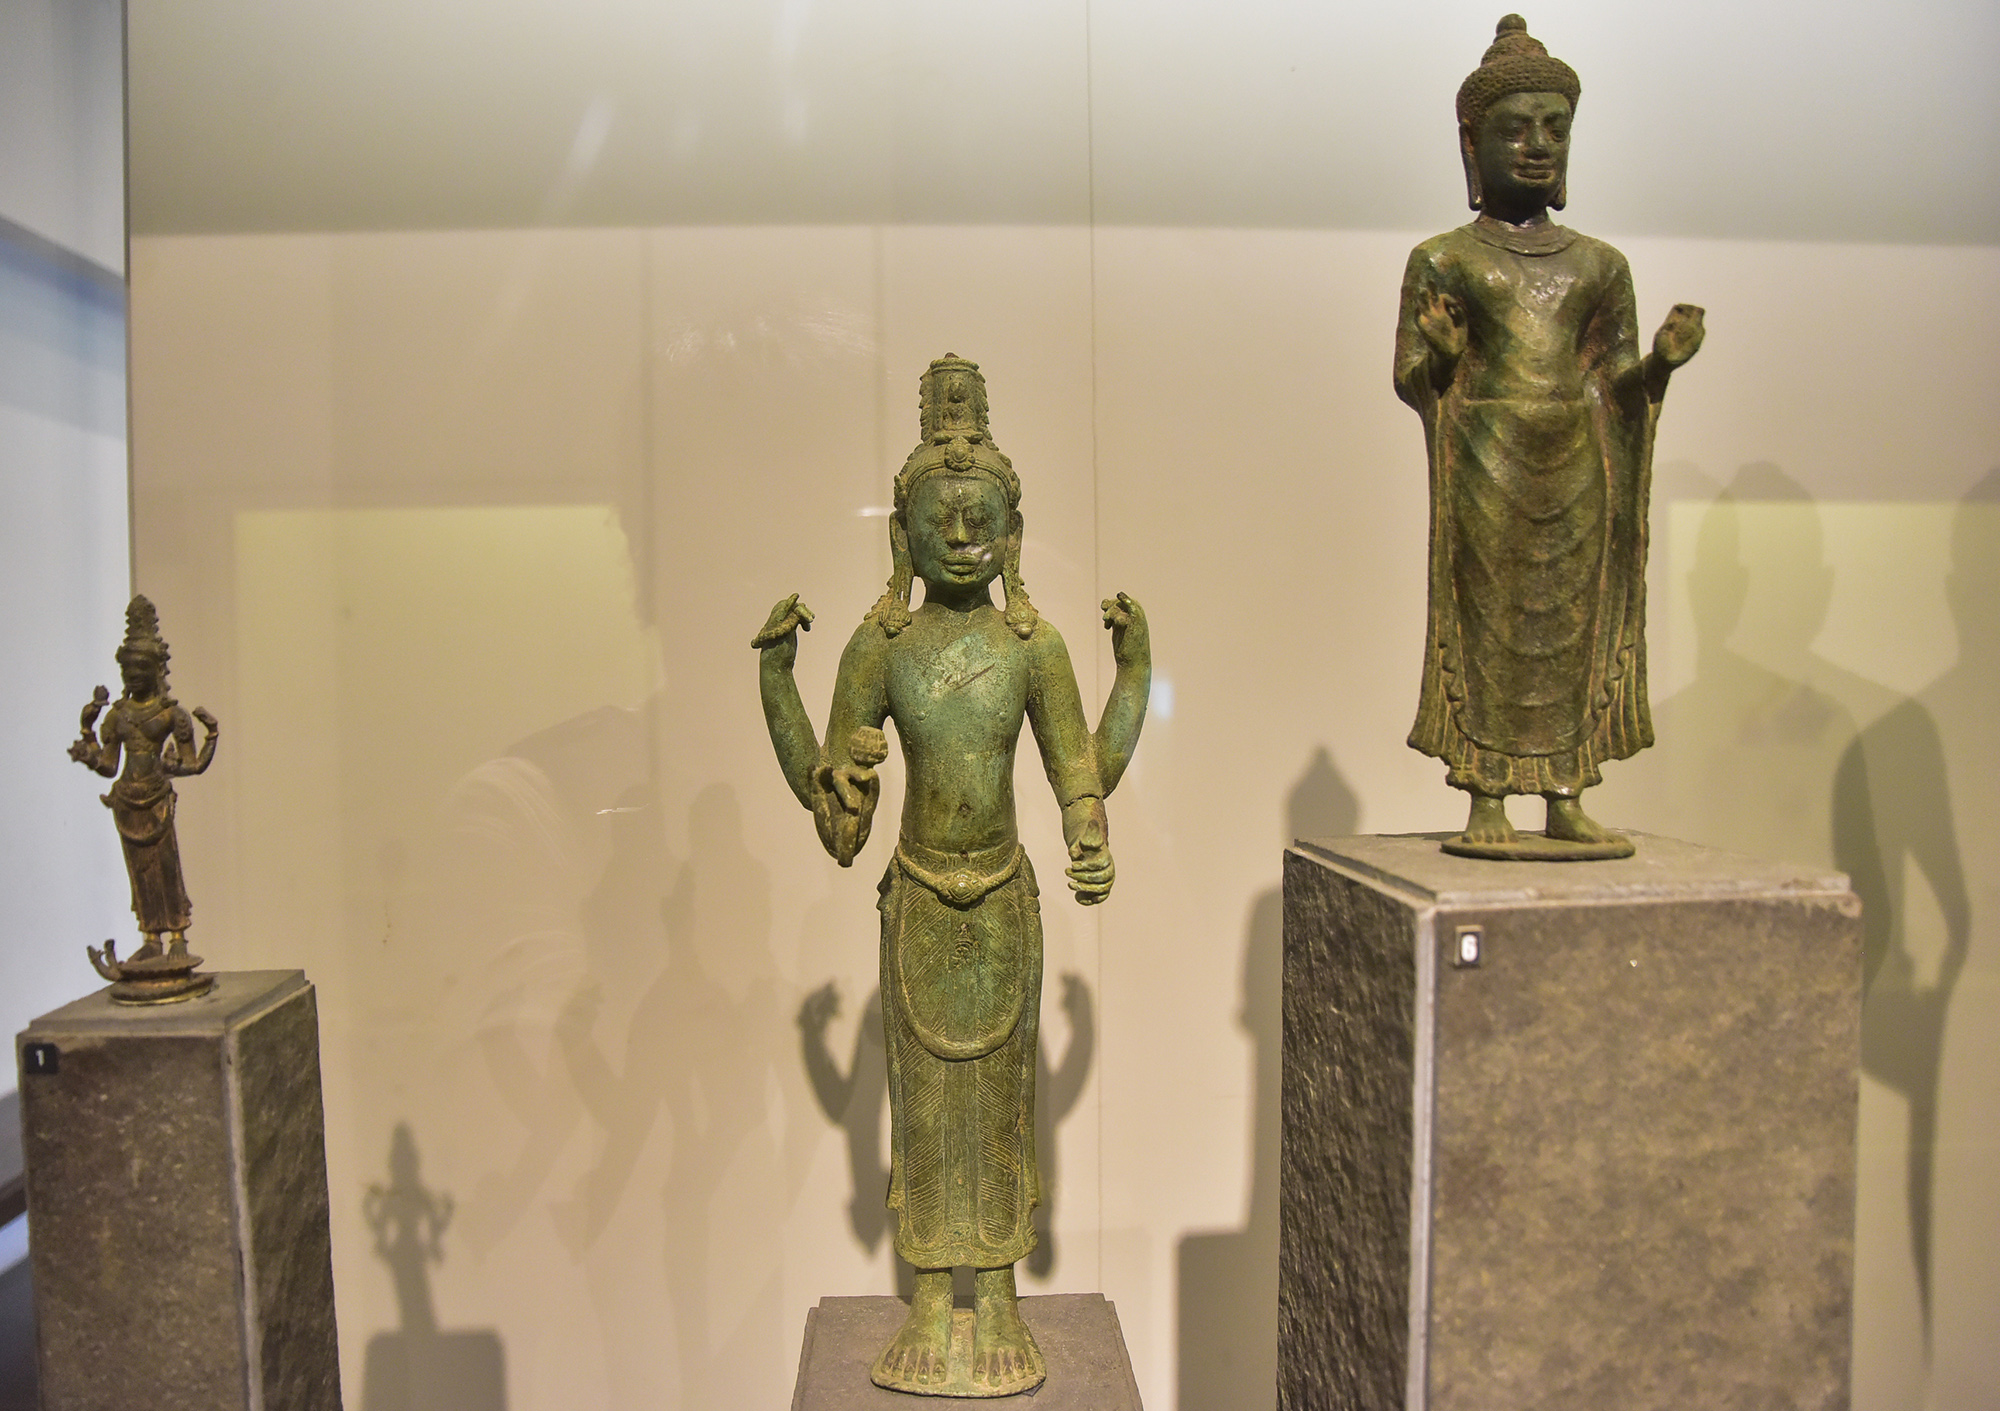 Tại khu trưng bày văn hoá Chămpa, bức tượng Avalokitesvara được làm bằng đồng, có niên đại thế kỷ 8 – 9, được tìm thấy ở Hoài Nhơn, Bình Định. Đây là một trong những kiệt tác của nghệ thuật, kỹ thuật đúc đồng tài năng, sáng tạo của cư dân Chămpa trong thời kỳ này. Tượng cùng 11 hiện vật khác được công nhận Bảo vật quốc gia trưng bày tại đây.